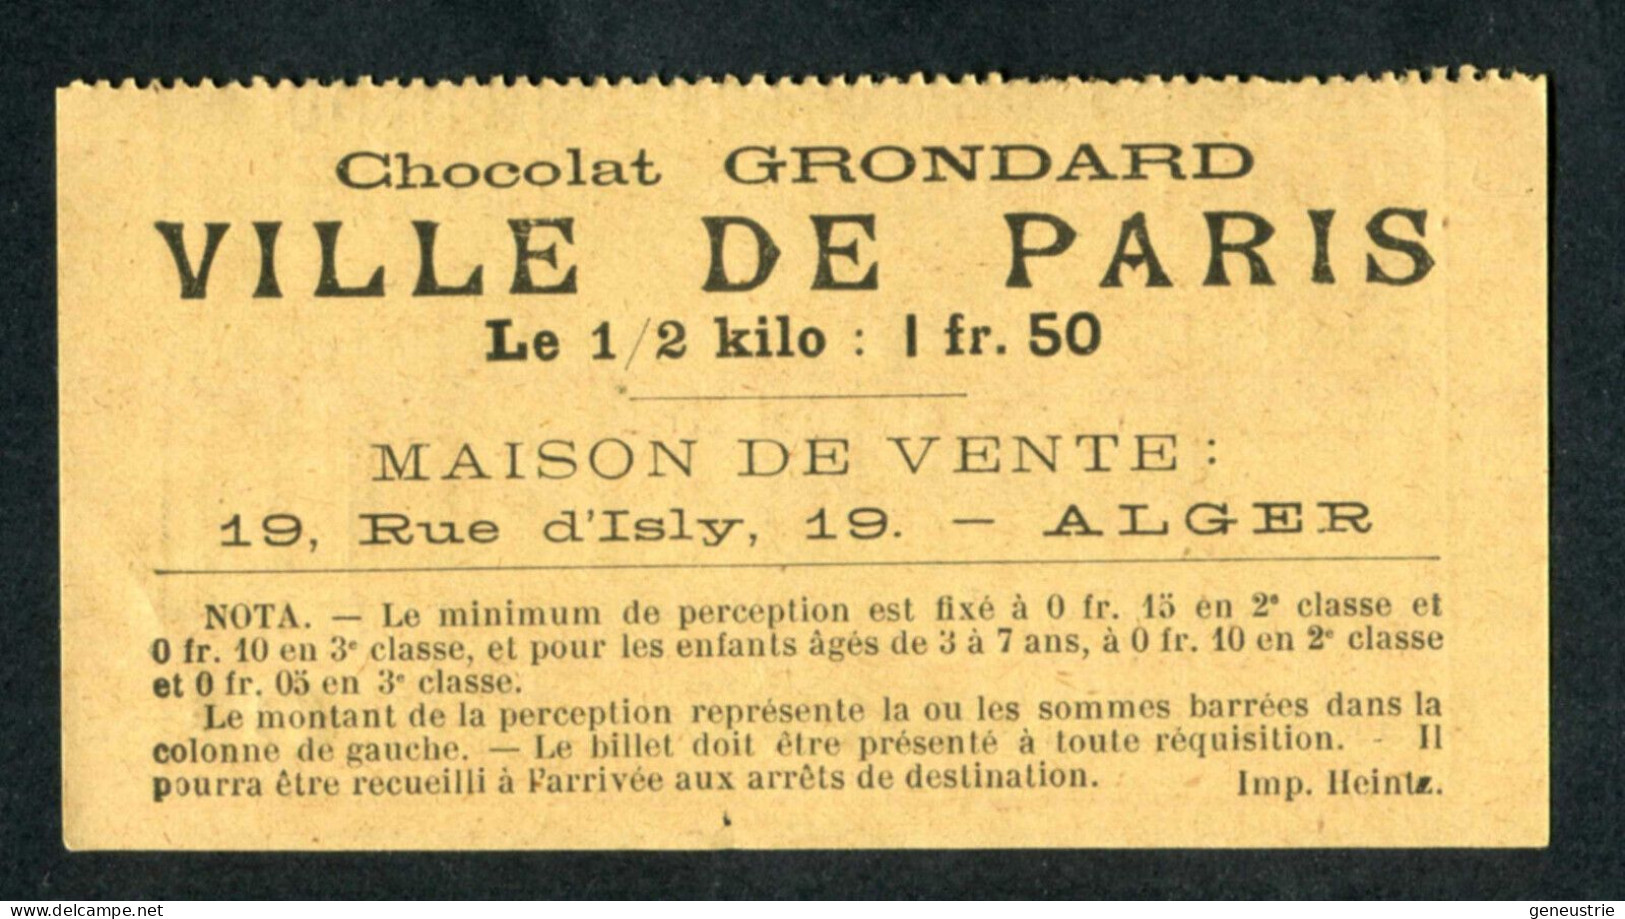 Ticket Tramway Alger Vers 1900 "Chemin De Fer Sur Route D'Algerie" Billet Chemin De Fer - Pub Chocolat Grondard - World